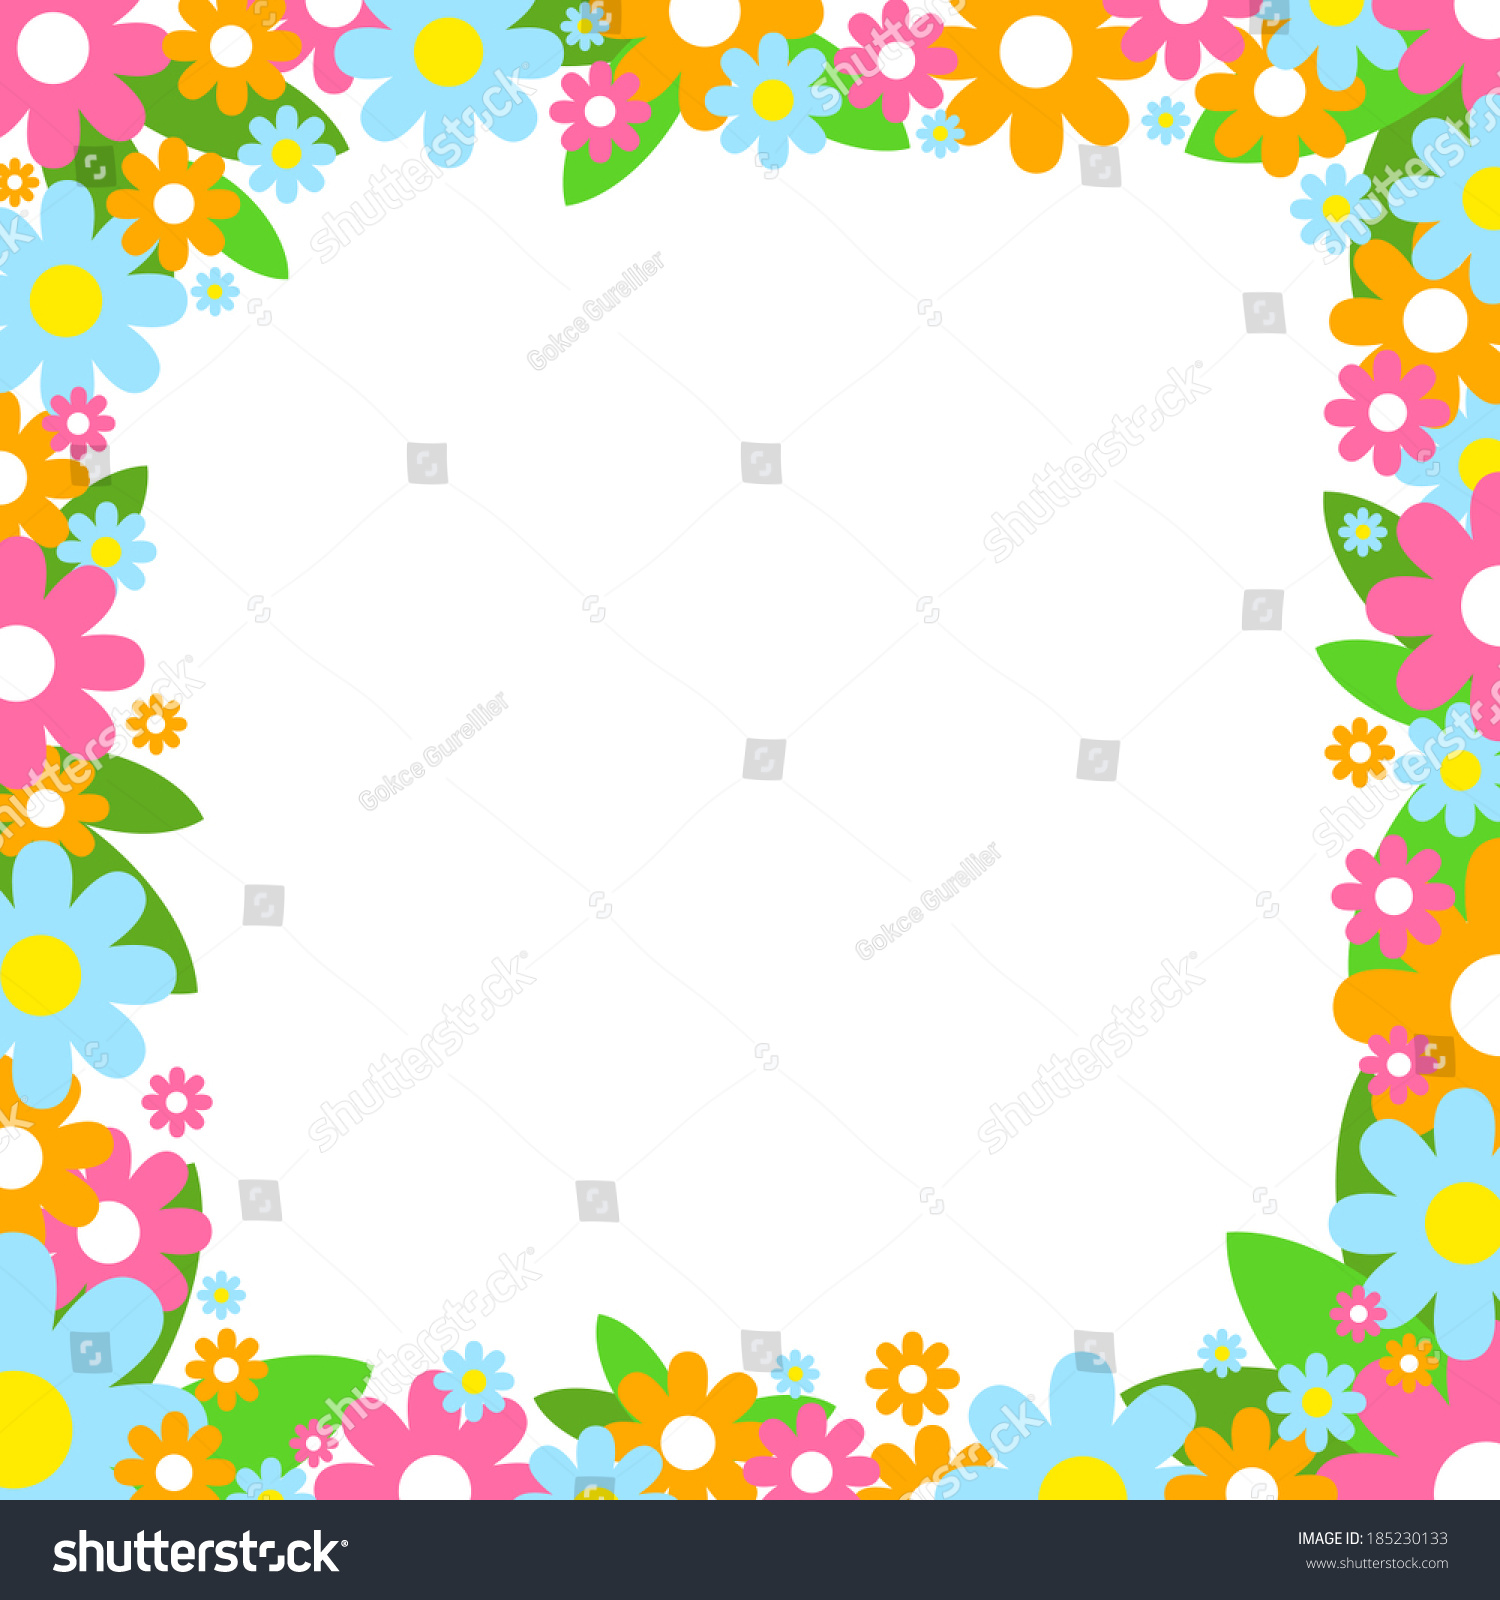 Vector Flower Frame - 185230133 : Shutterstock